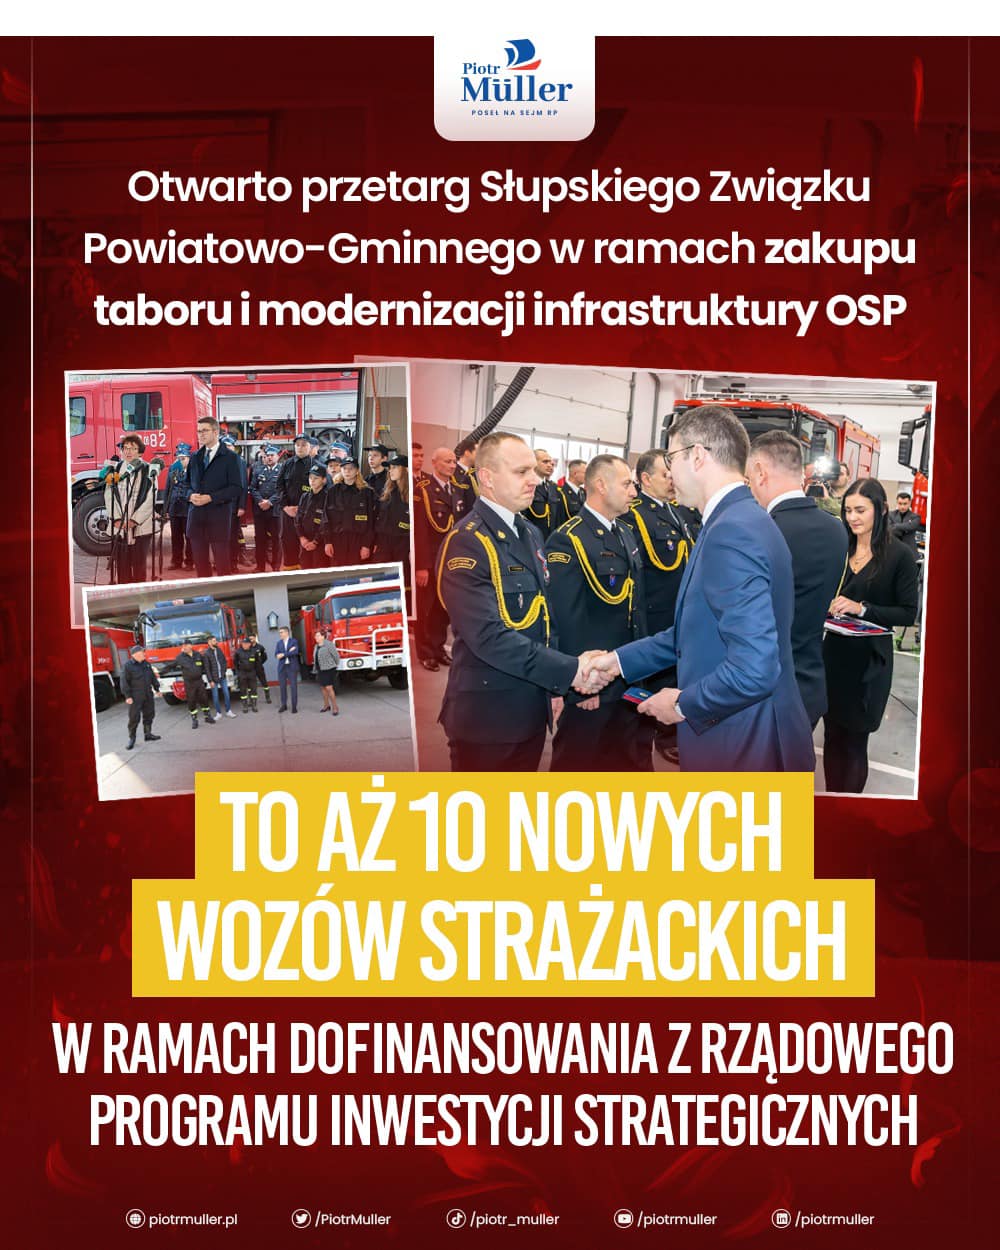 Otwarto przetarg Słupskiego Związku Powiatowo-Gminnego w ramach zakupu taboru i modernizacji infrastruktury społecznej OSP!